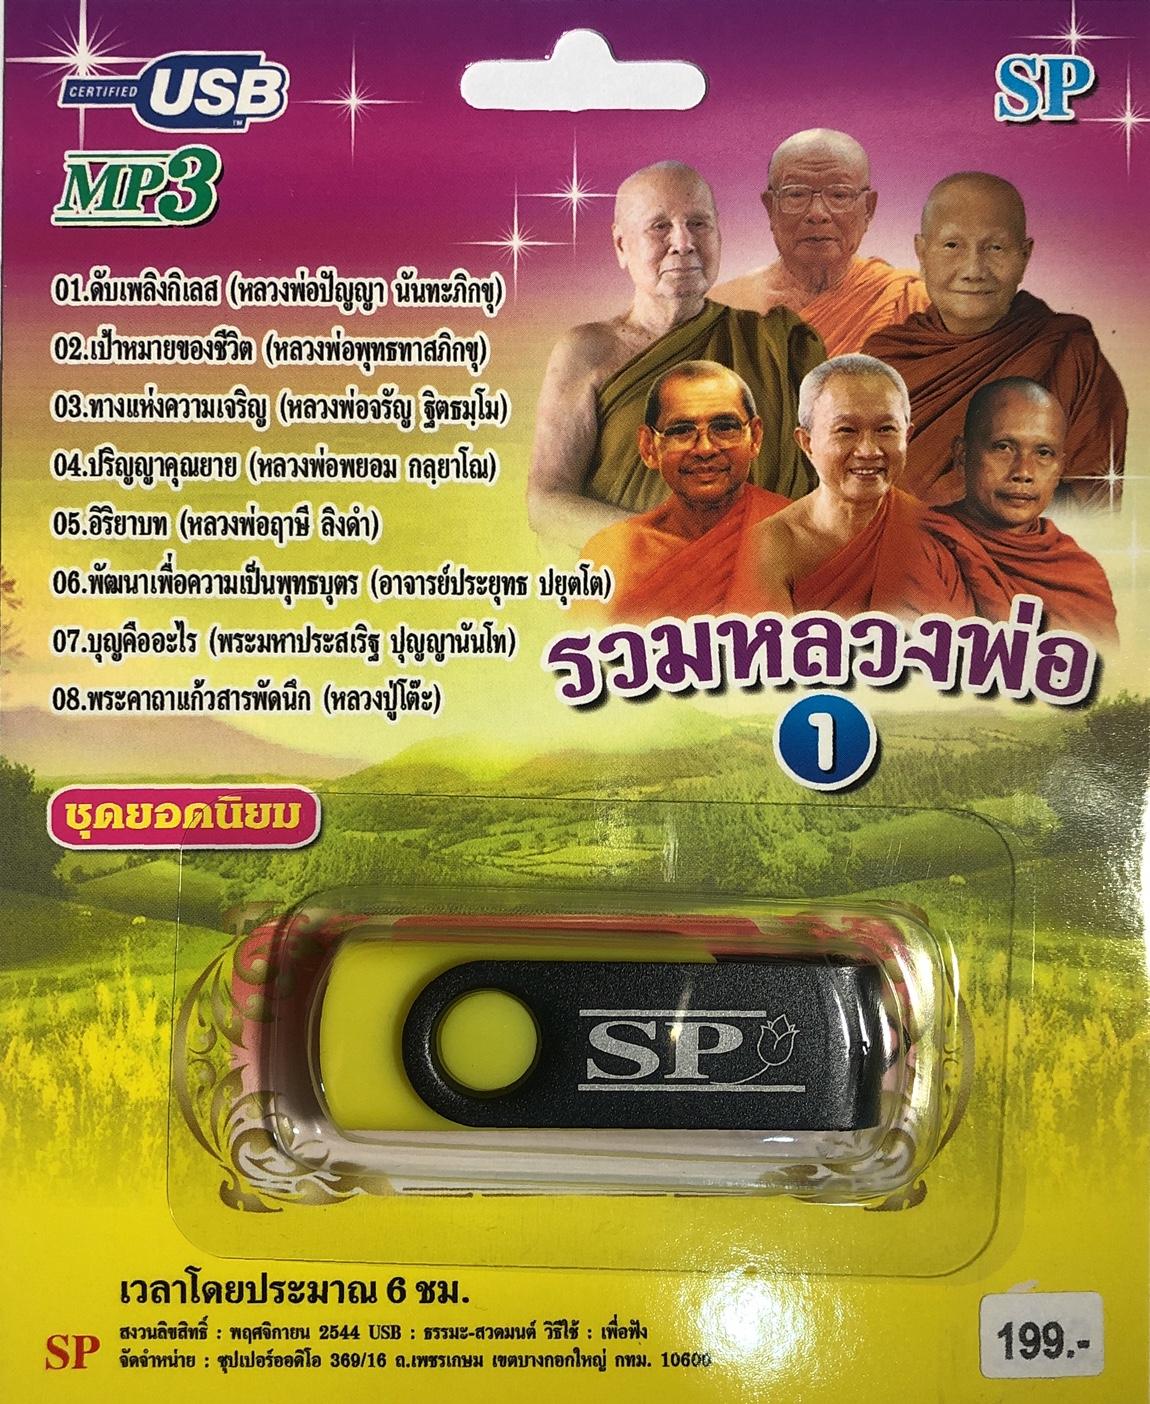 แฟลชไดร์ฟ Flash Drive เพลง MP3 รวมหลวงพ่อ ชุด 1